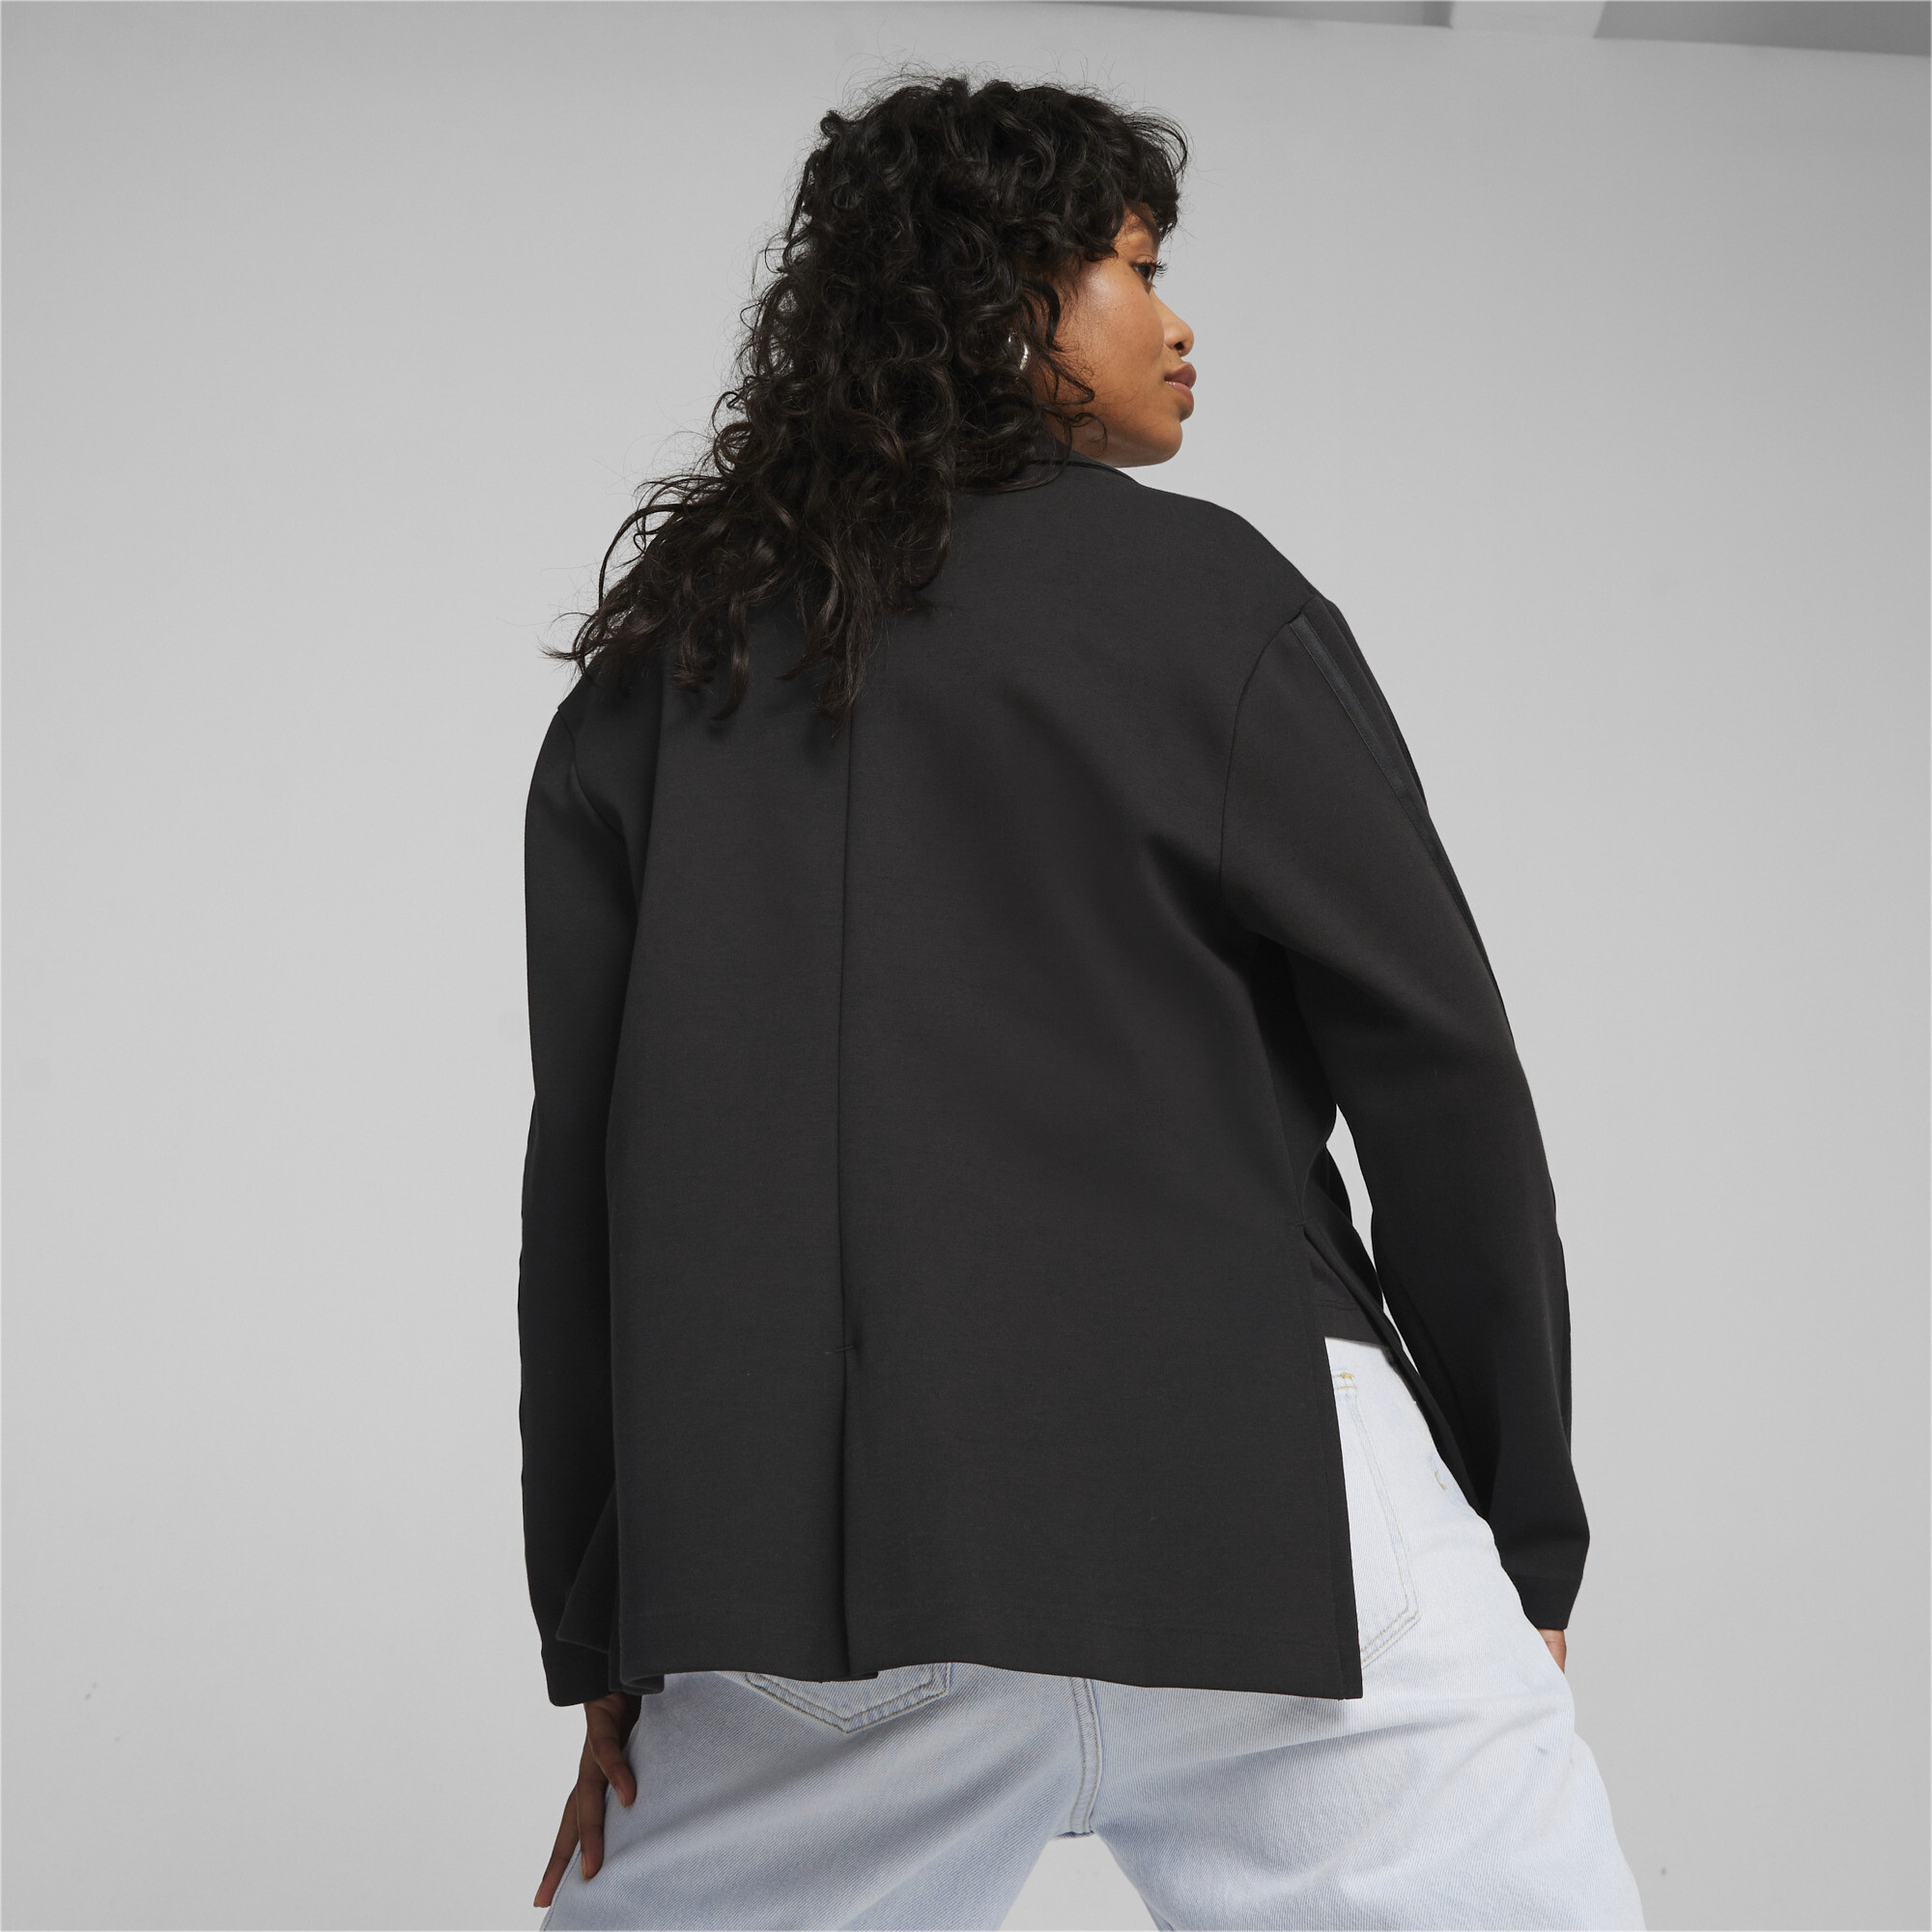 Women's PUMA T7 Blazer Women In Black, Size Small